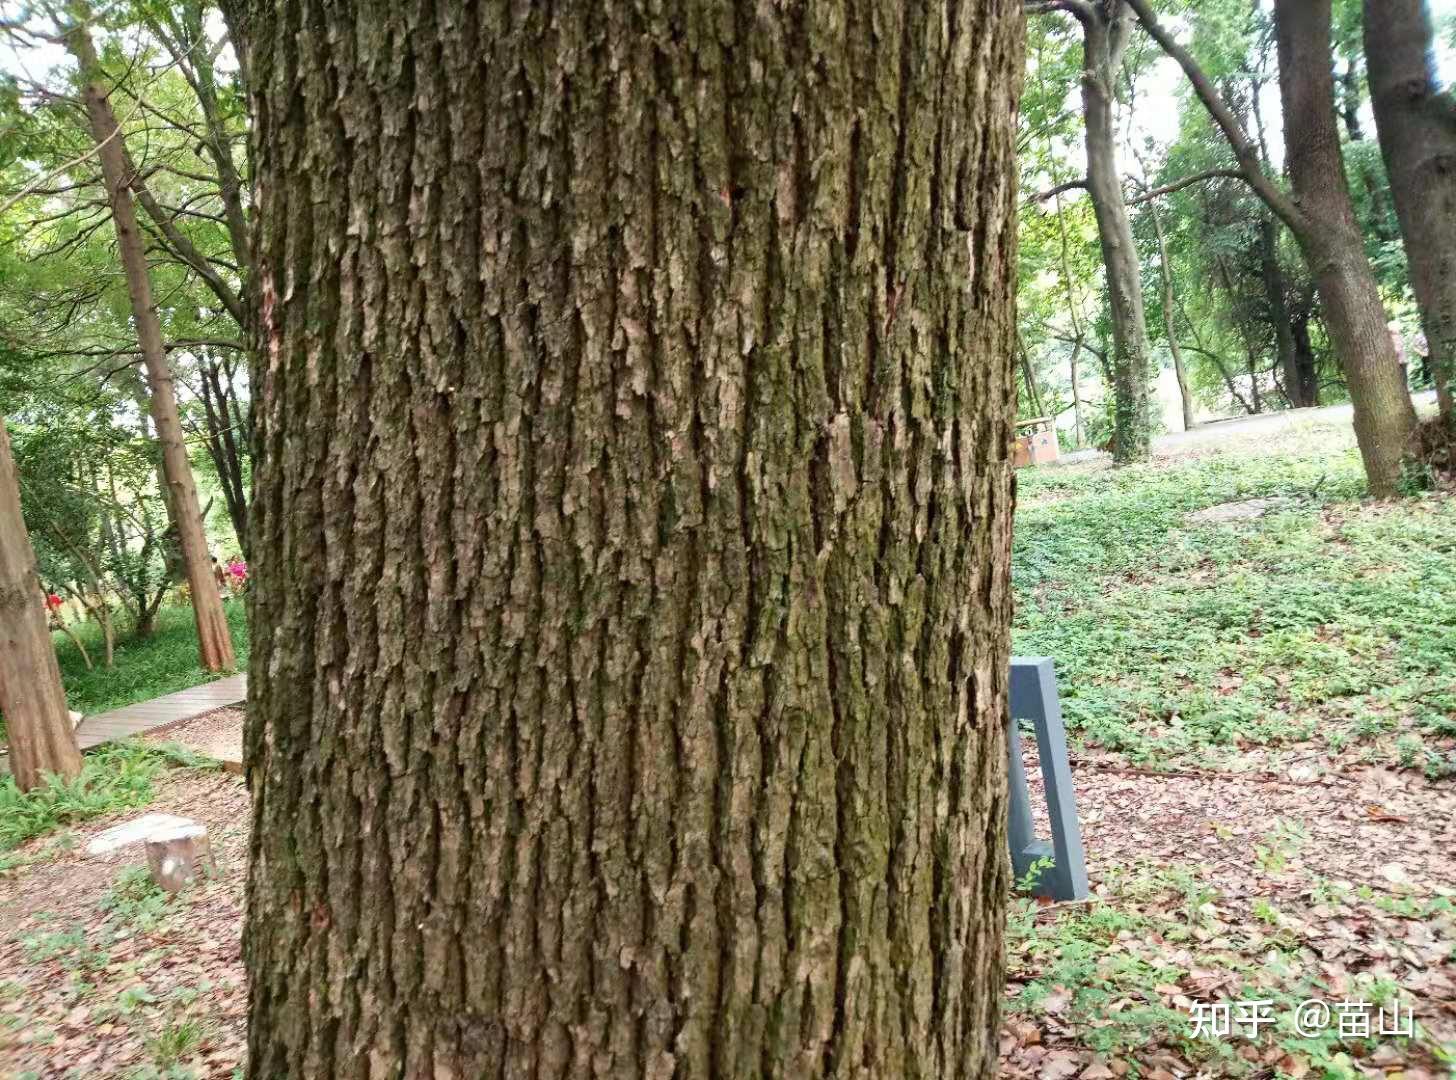 小小树皮能做甚,用它认木靠谱吗?